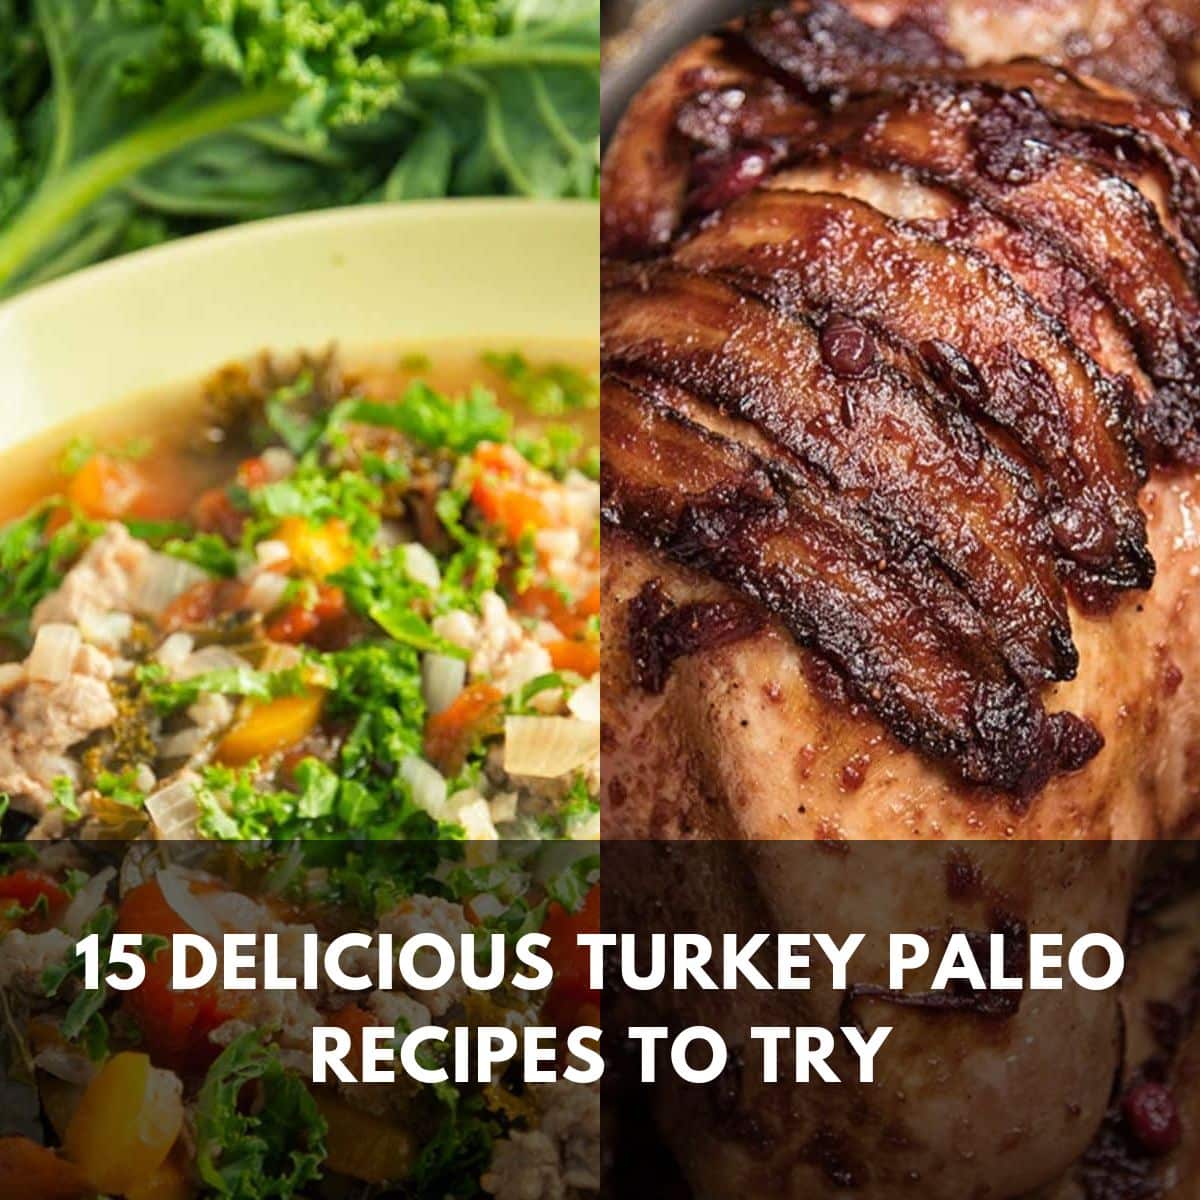 15 delicious turkey paleo recipes to try main